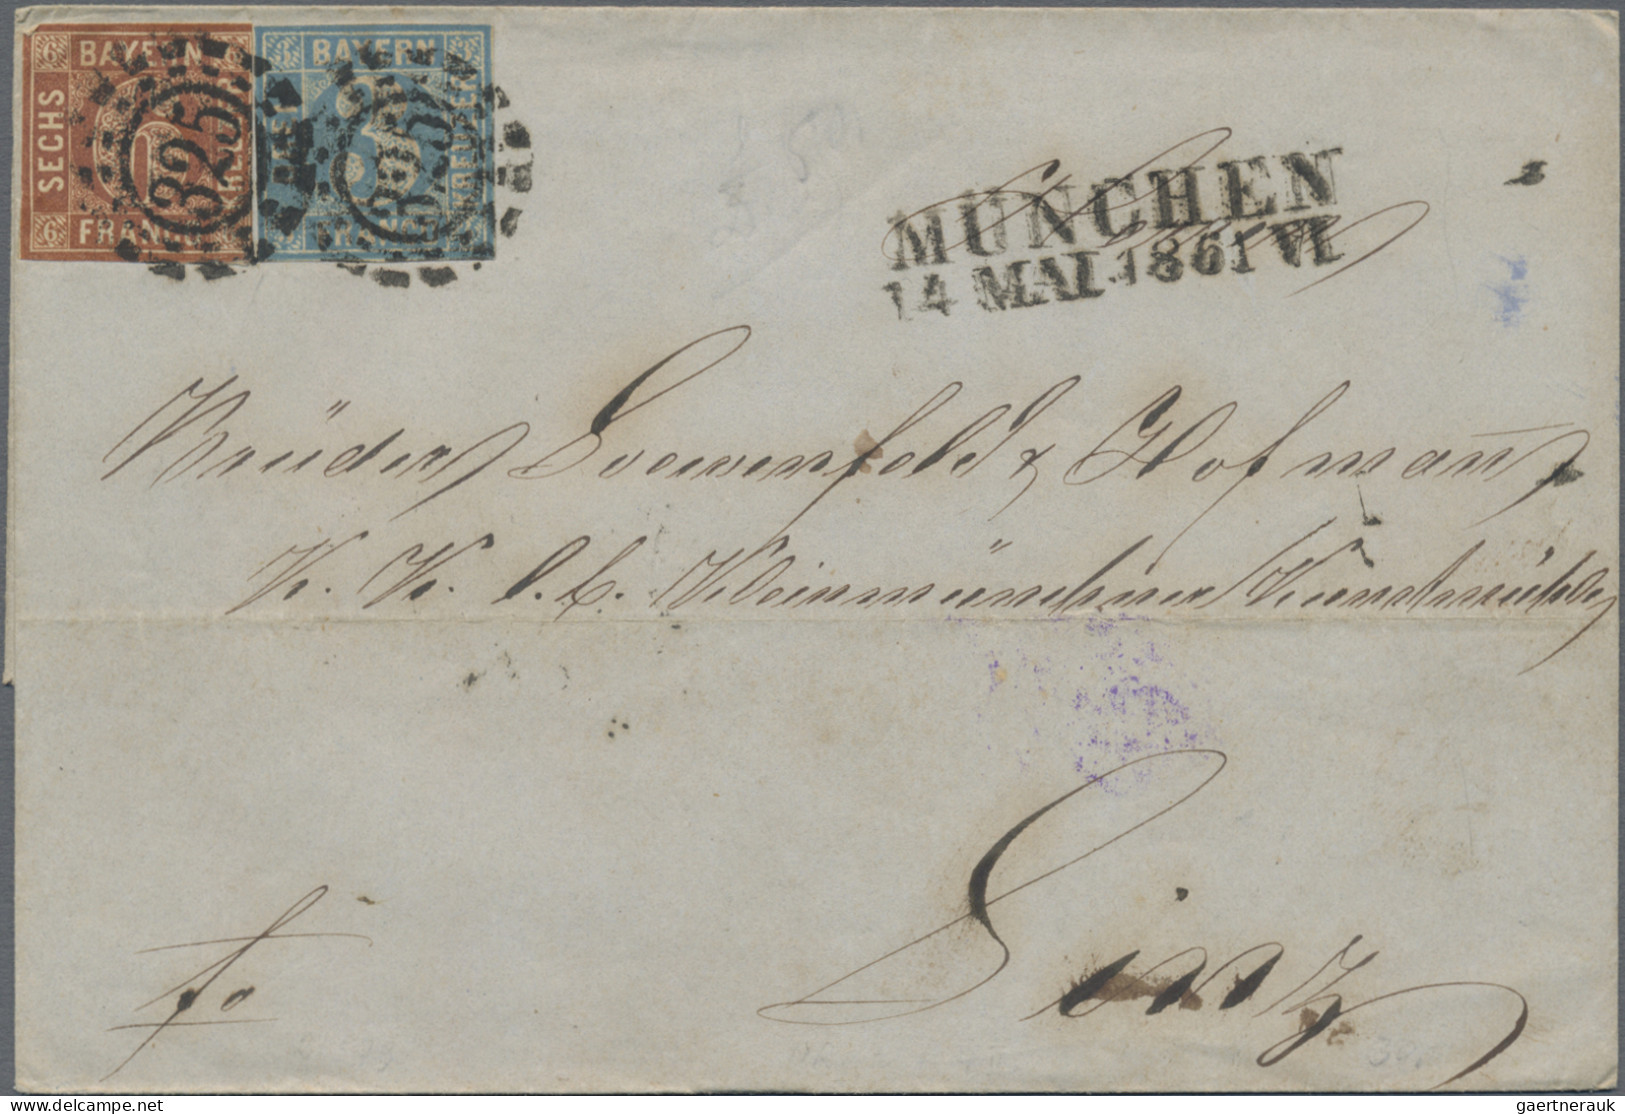 Bayern - Marken und Briefe: 1848/1873, Partie von 28 Briefen der Kreuzerzeit, me